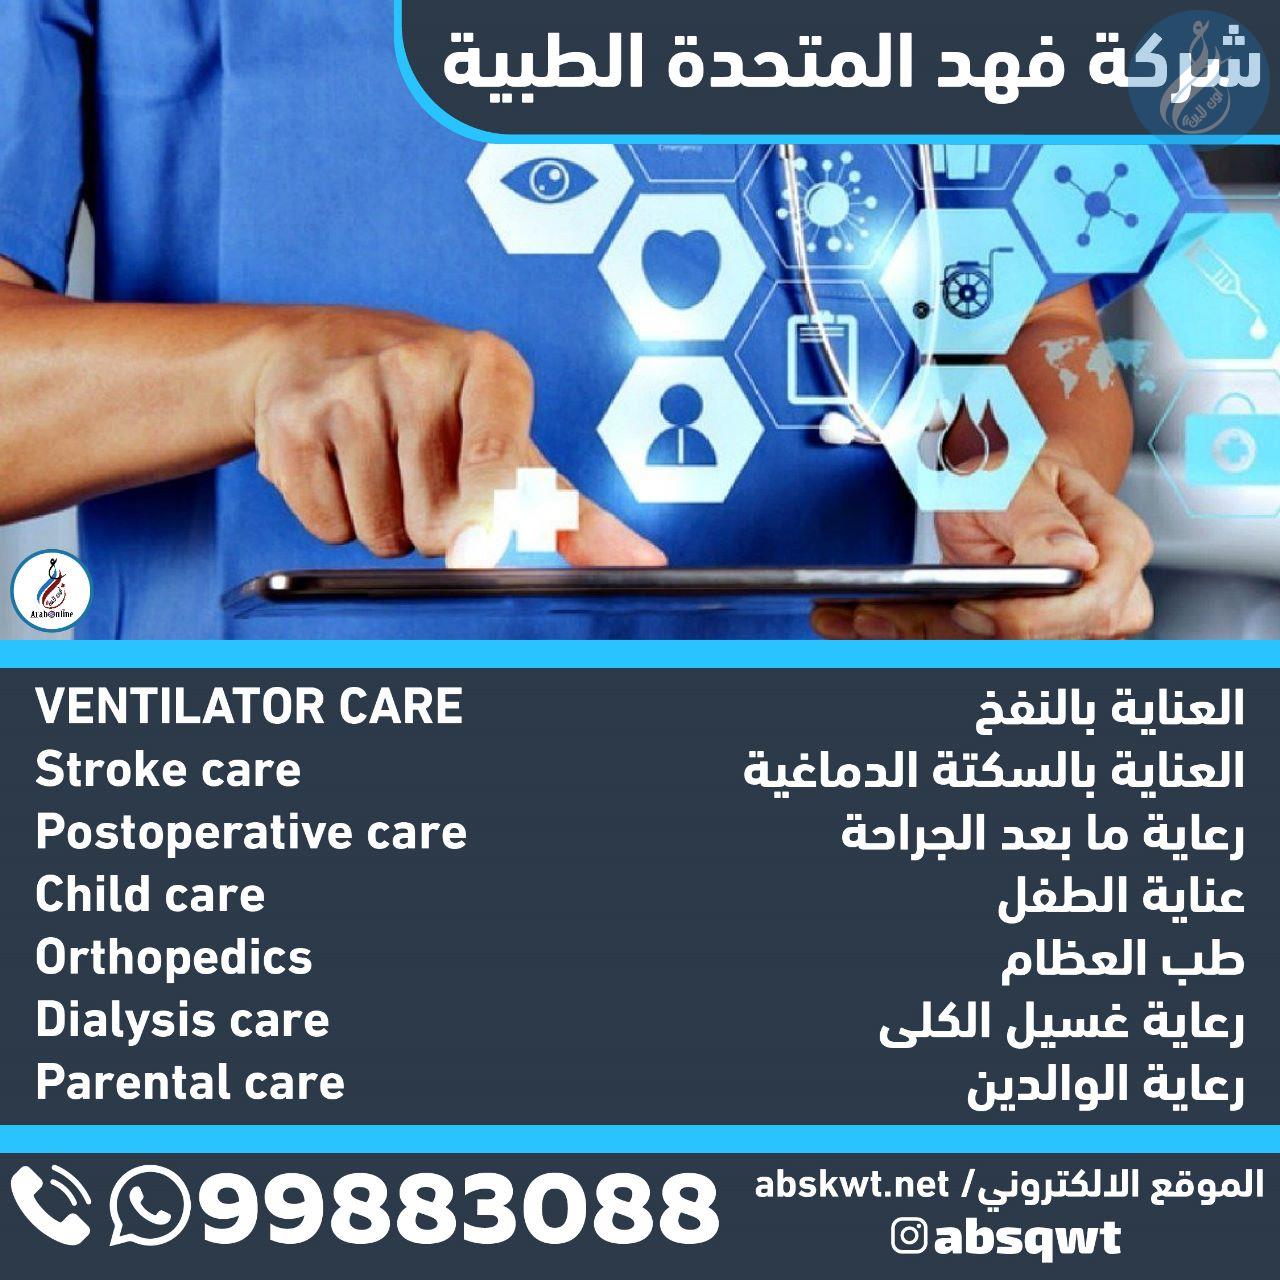 شركة فهد المتحدة الطبية / 99883088